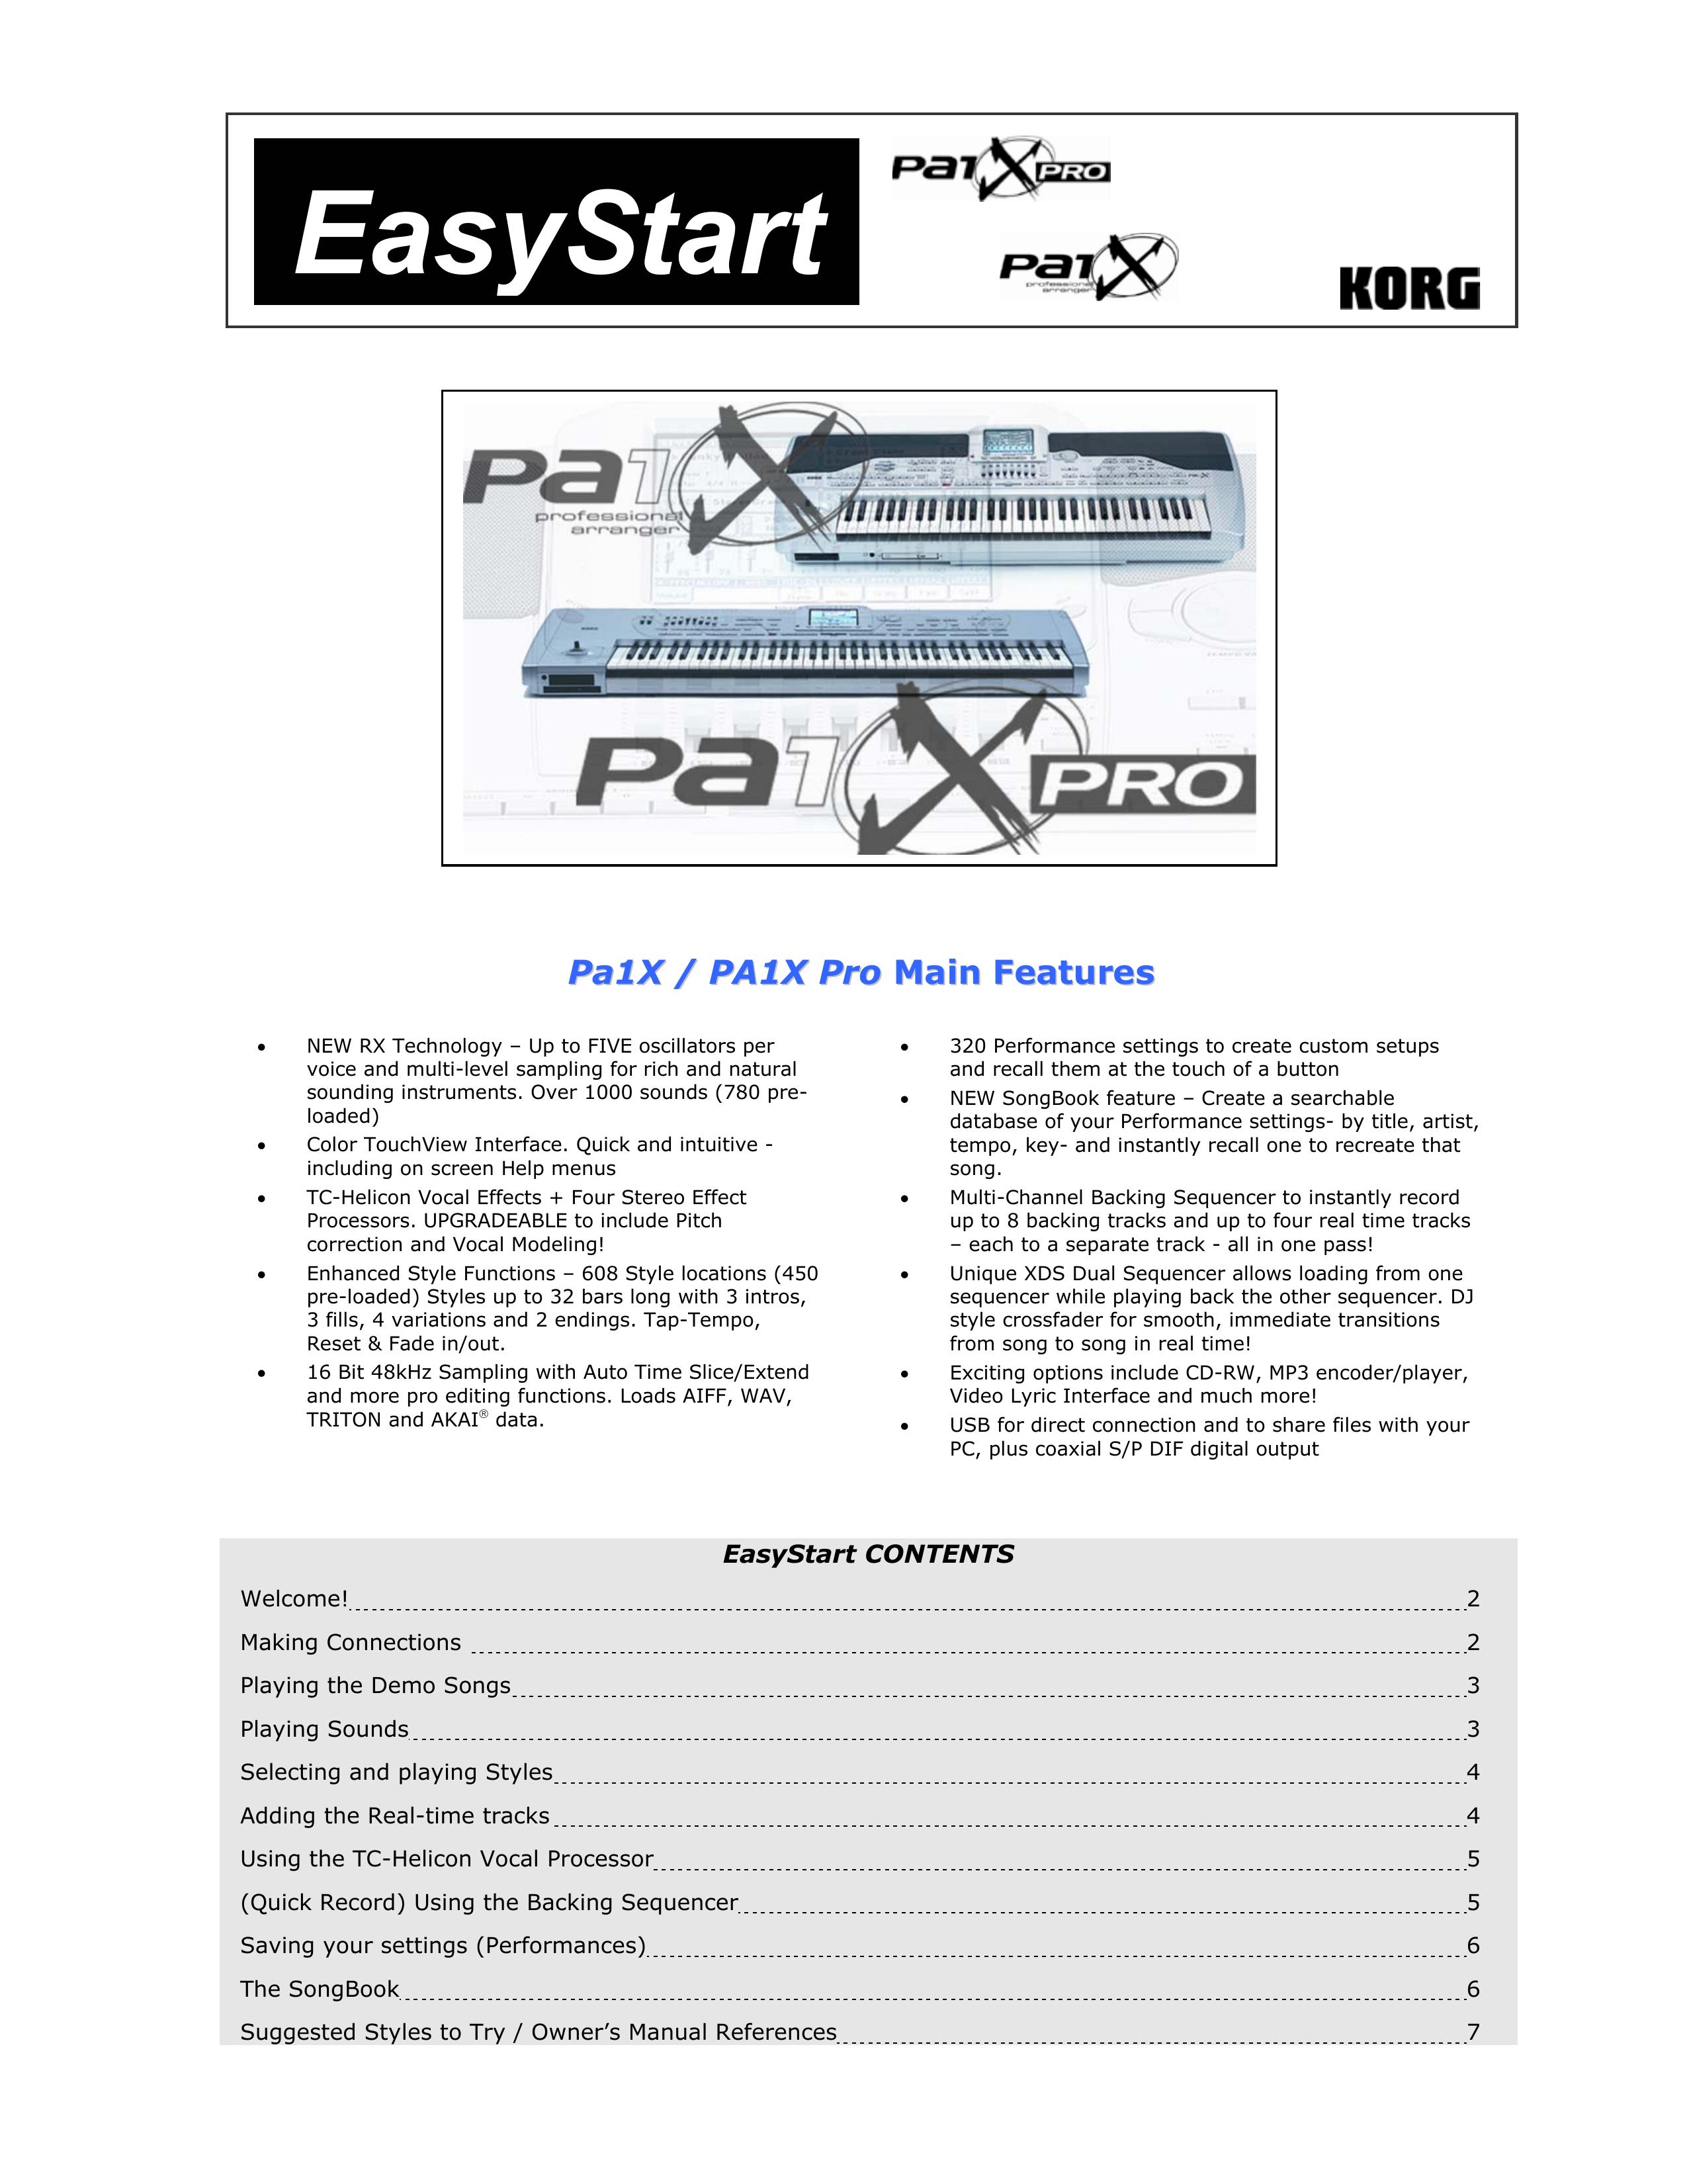 Korg PA1X Electronic Keyboard User Manual